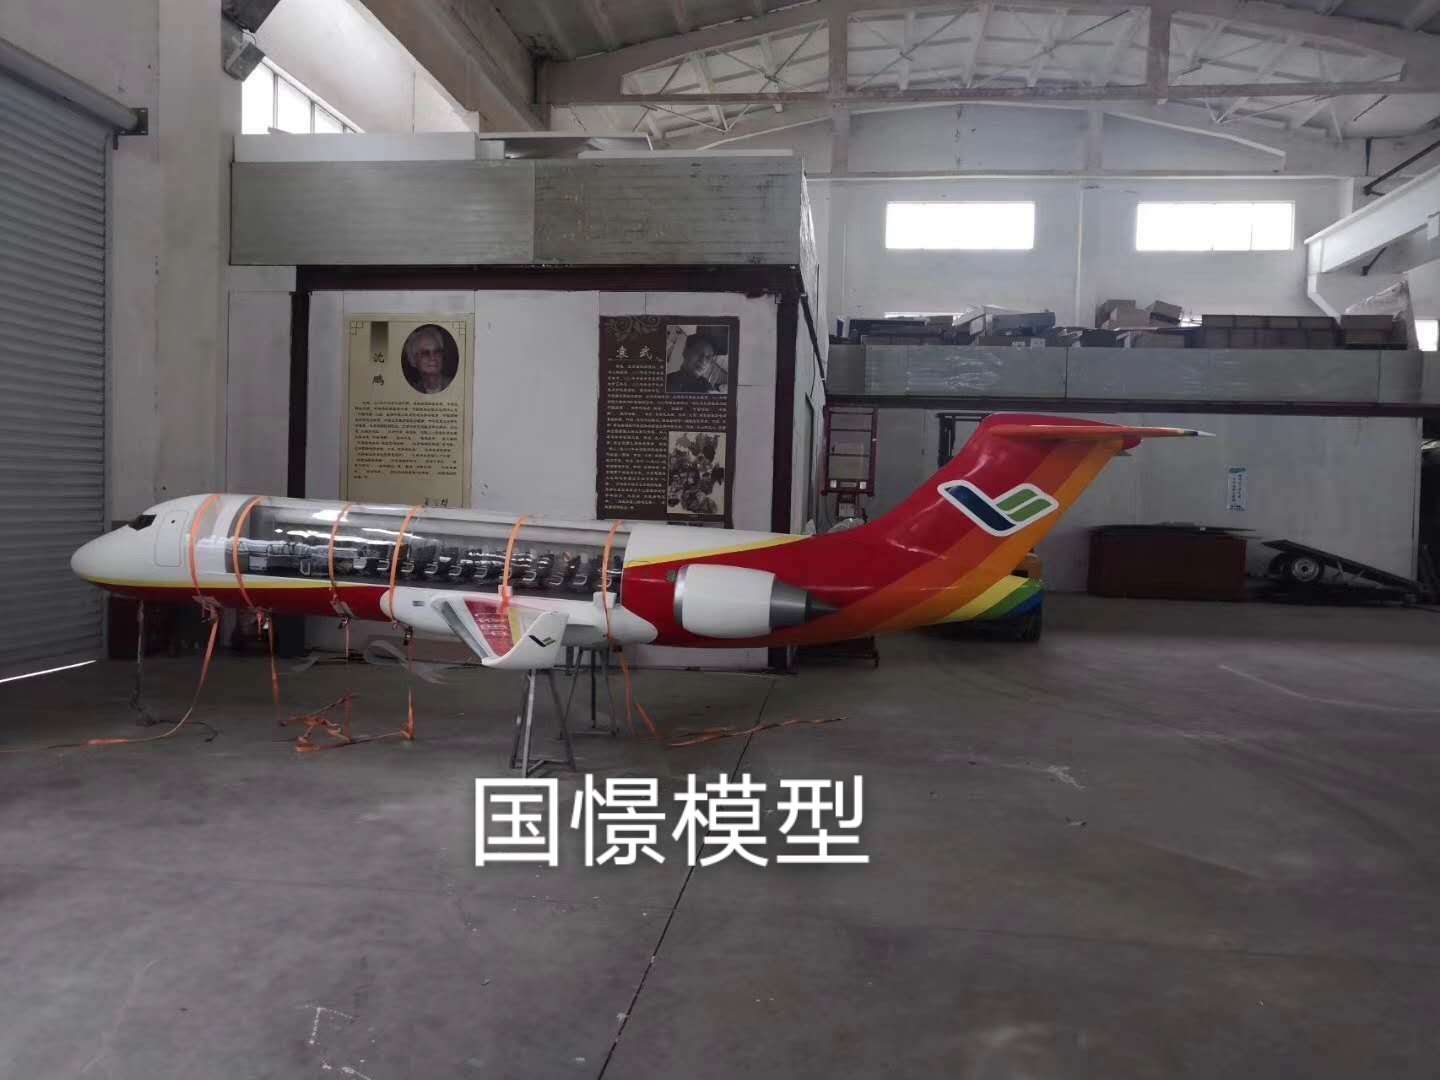 湛江飞机模型